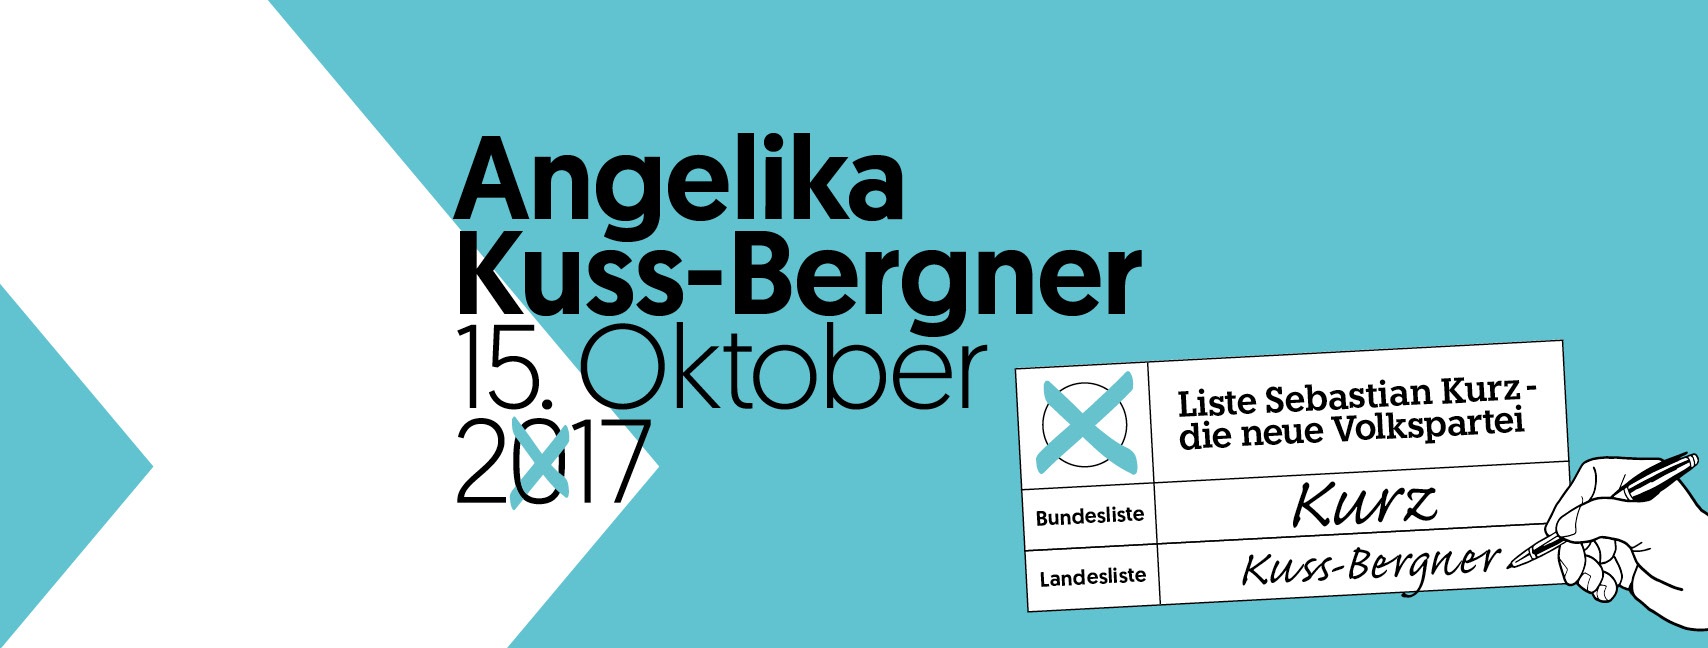 Neuhaus Foto 6 Angelika Kuss Bergner Banner